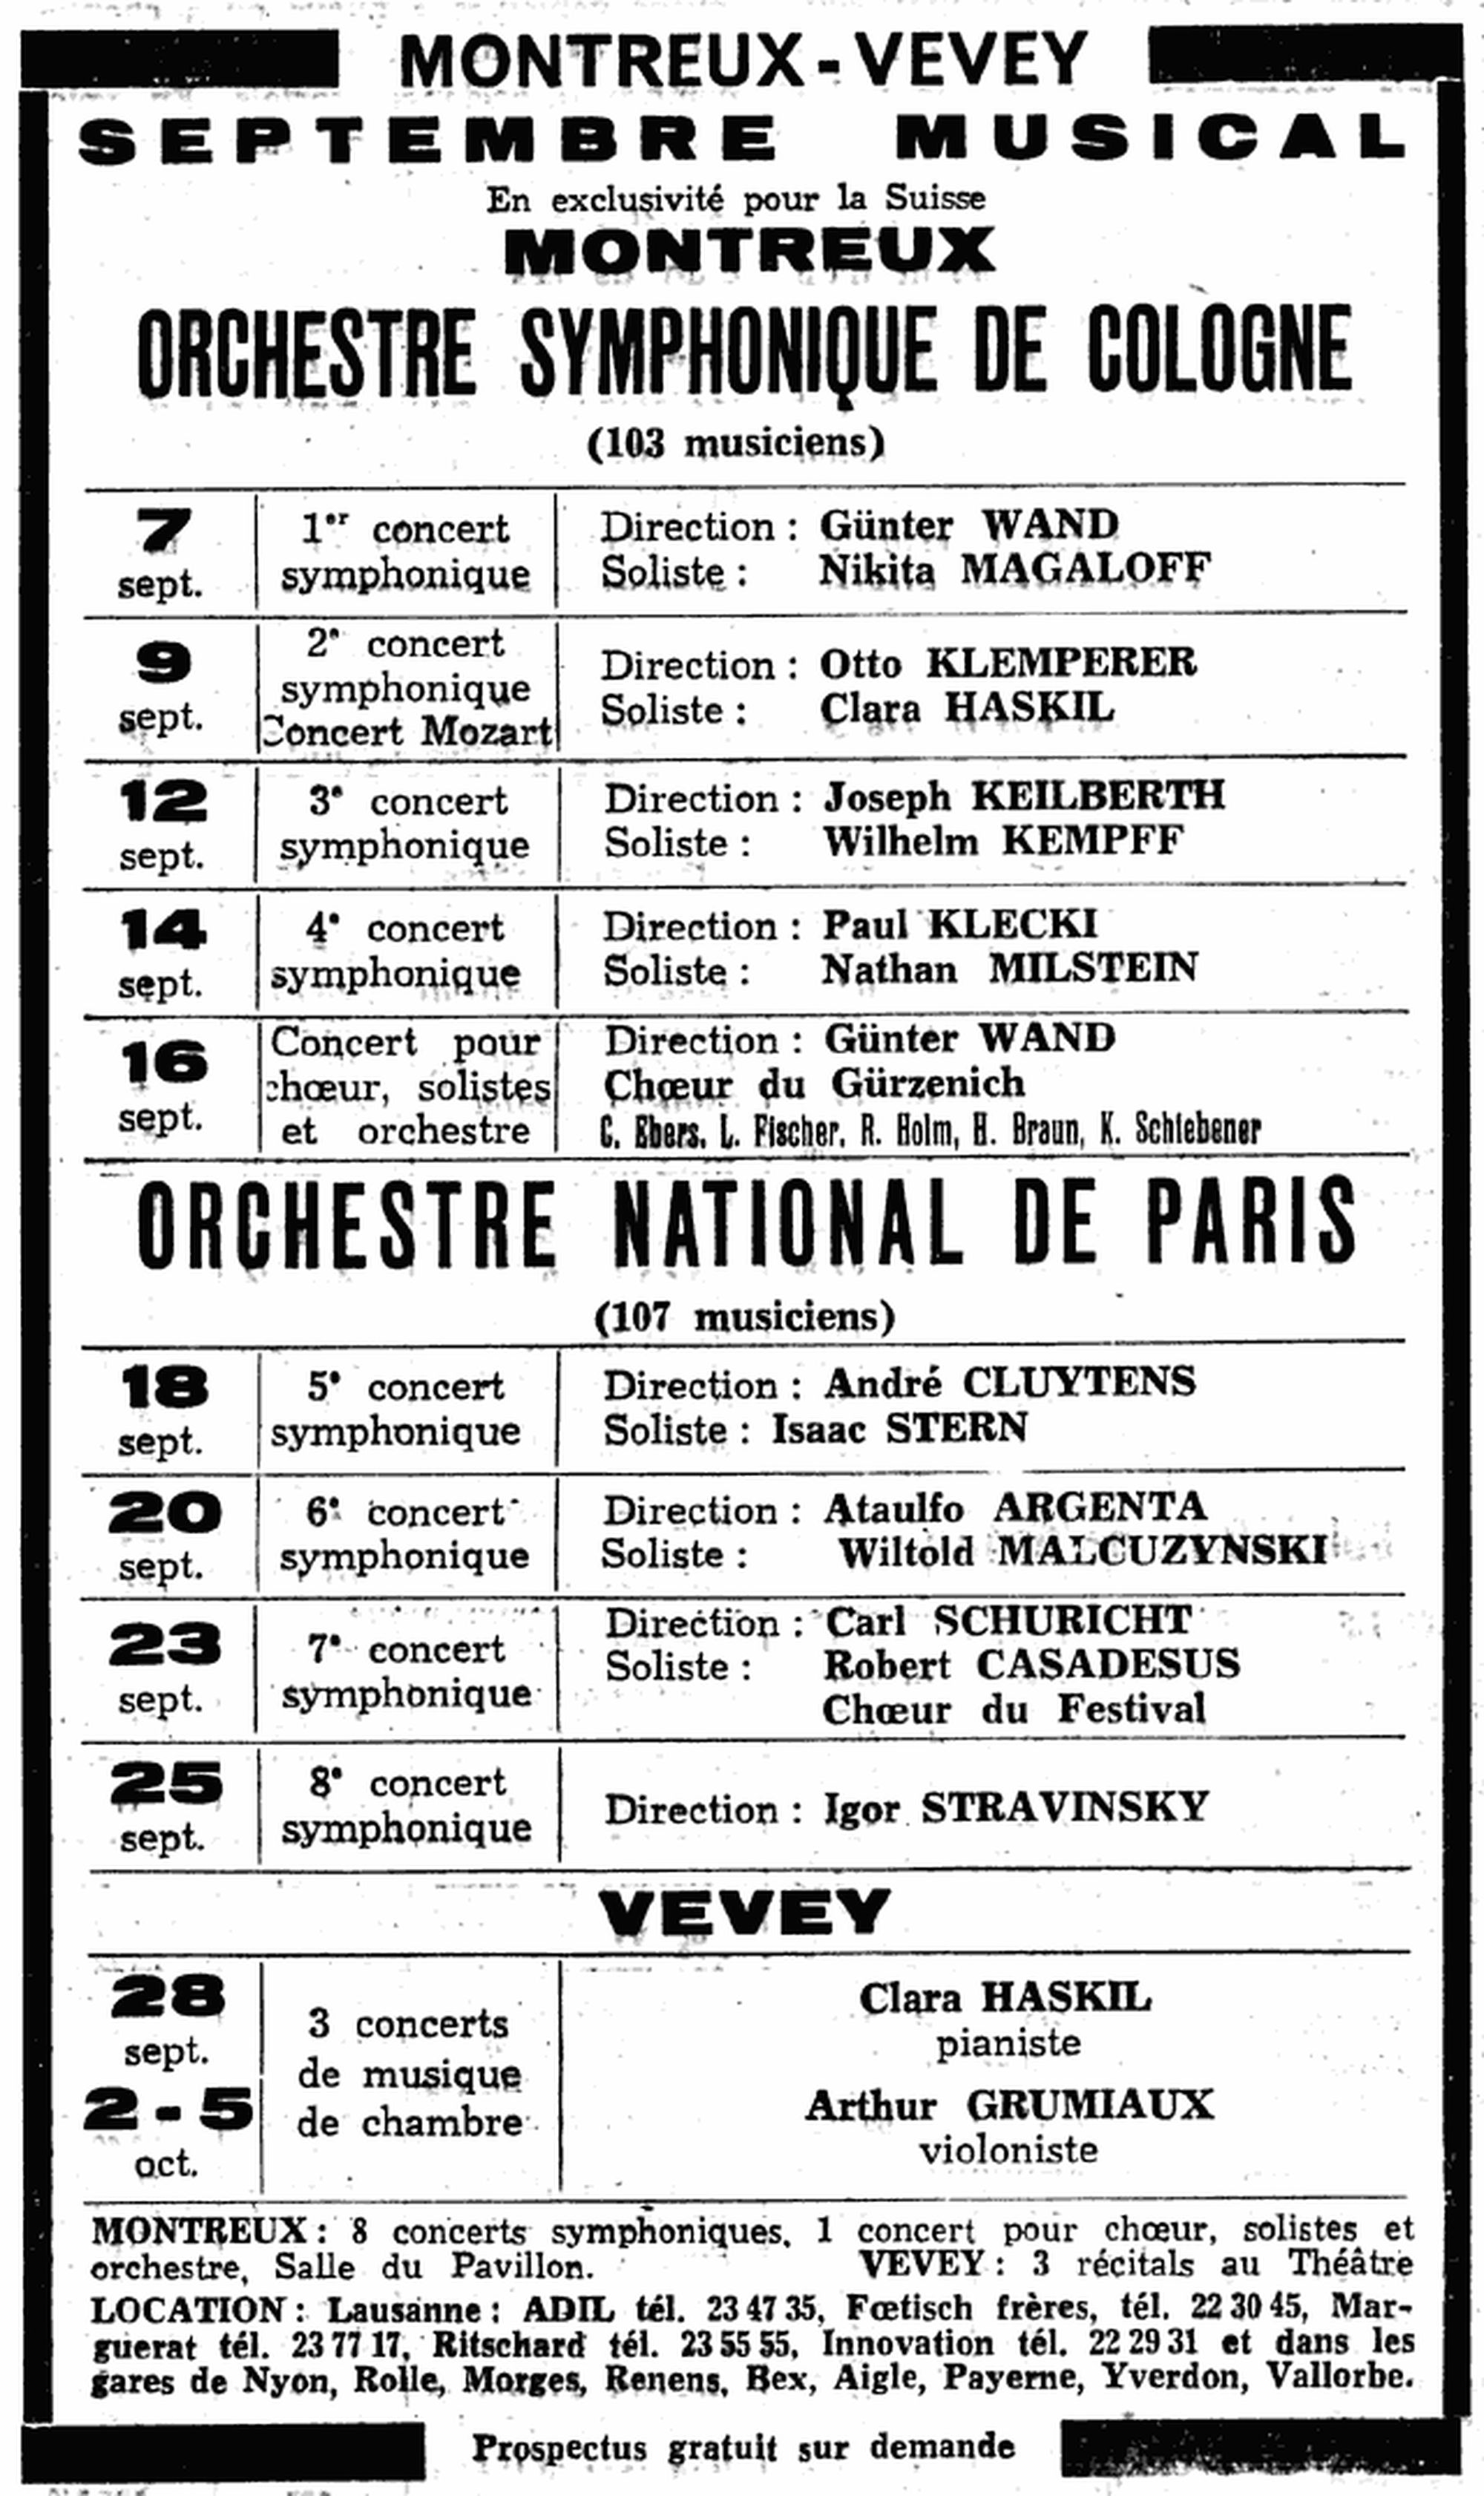 Festival de Montreux 1956